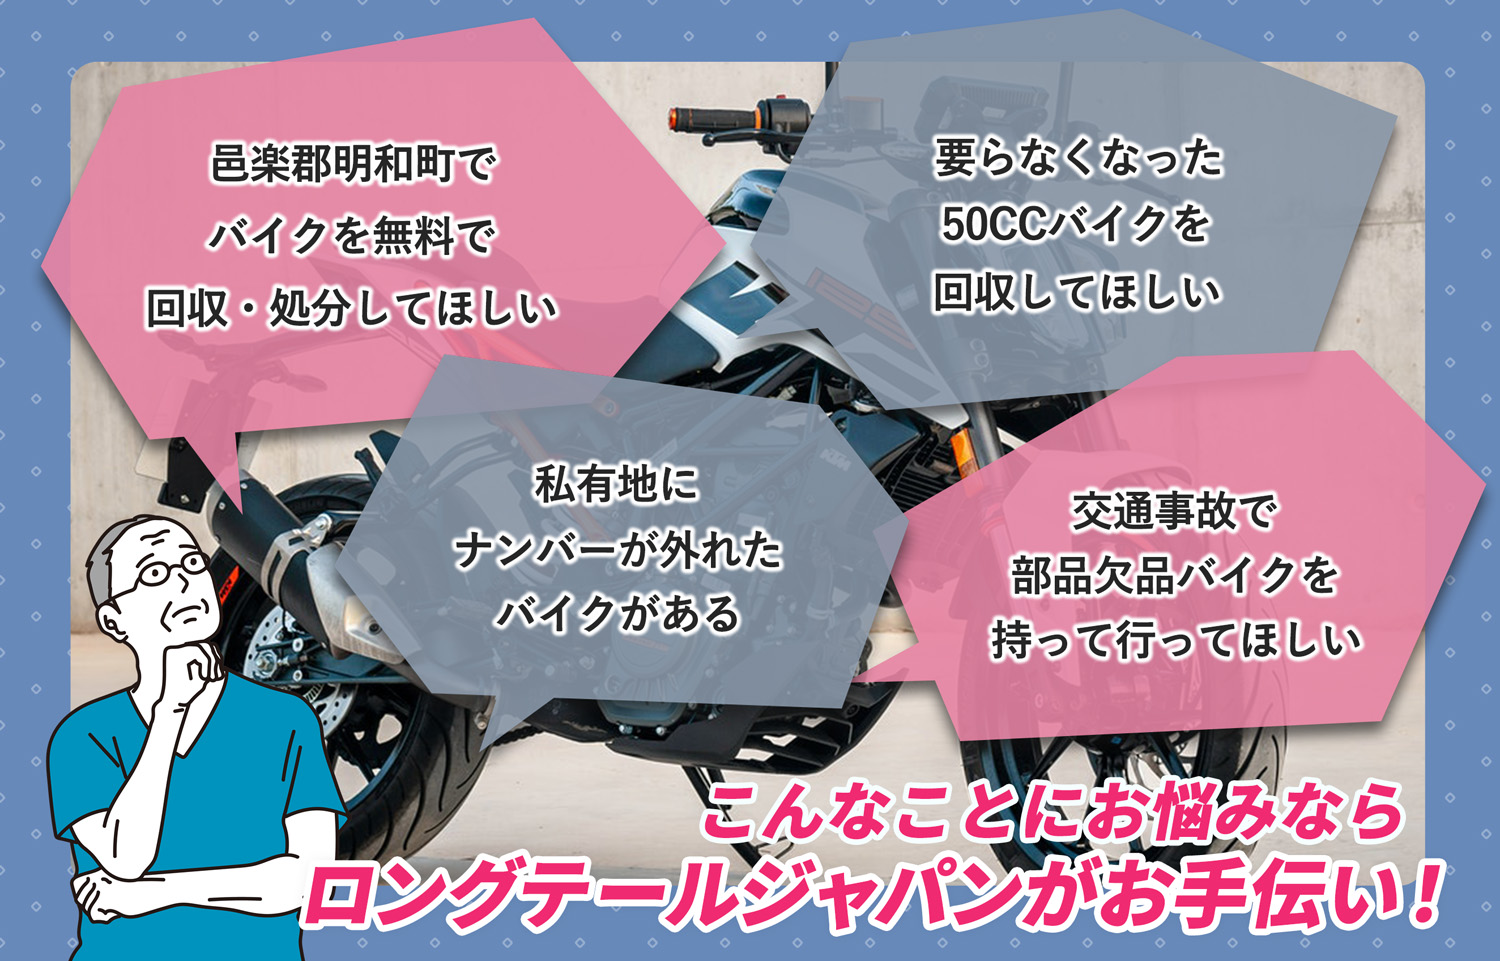 邑楽郡明和町でこんなバイクの処分にお困りでしたらバイク無料回収処分隊がお手伝いいたします。